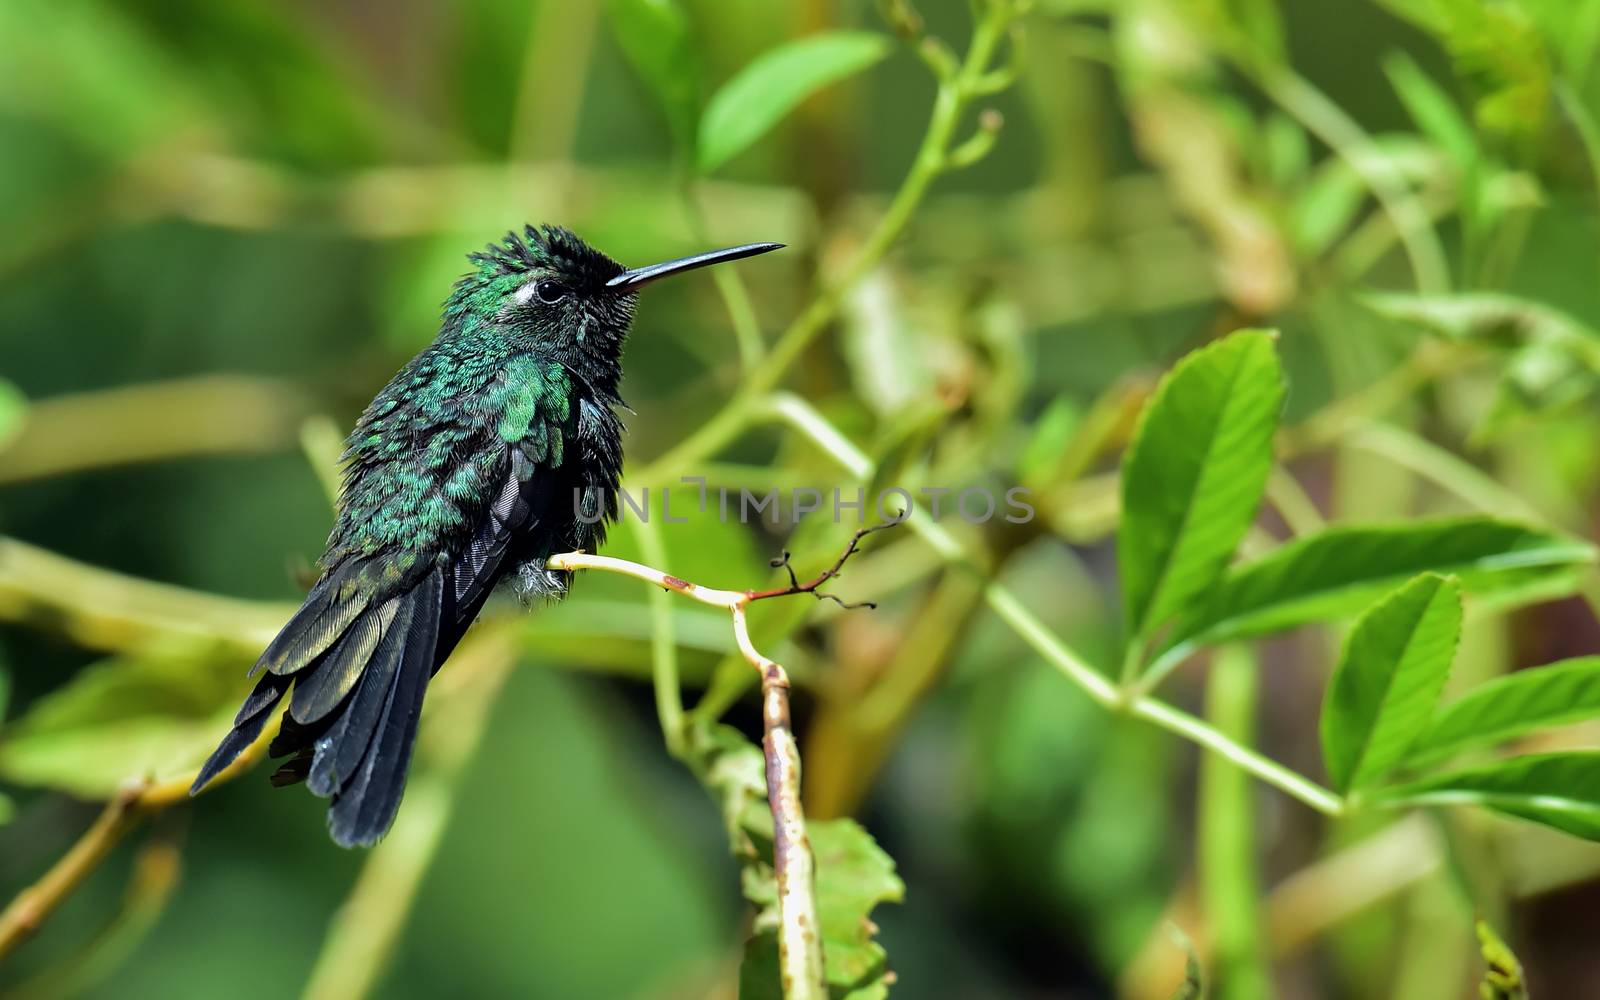  Cuban Emerald Hummingbird (Chlorostilbon ricordii) by SURZ